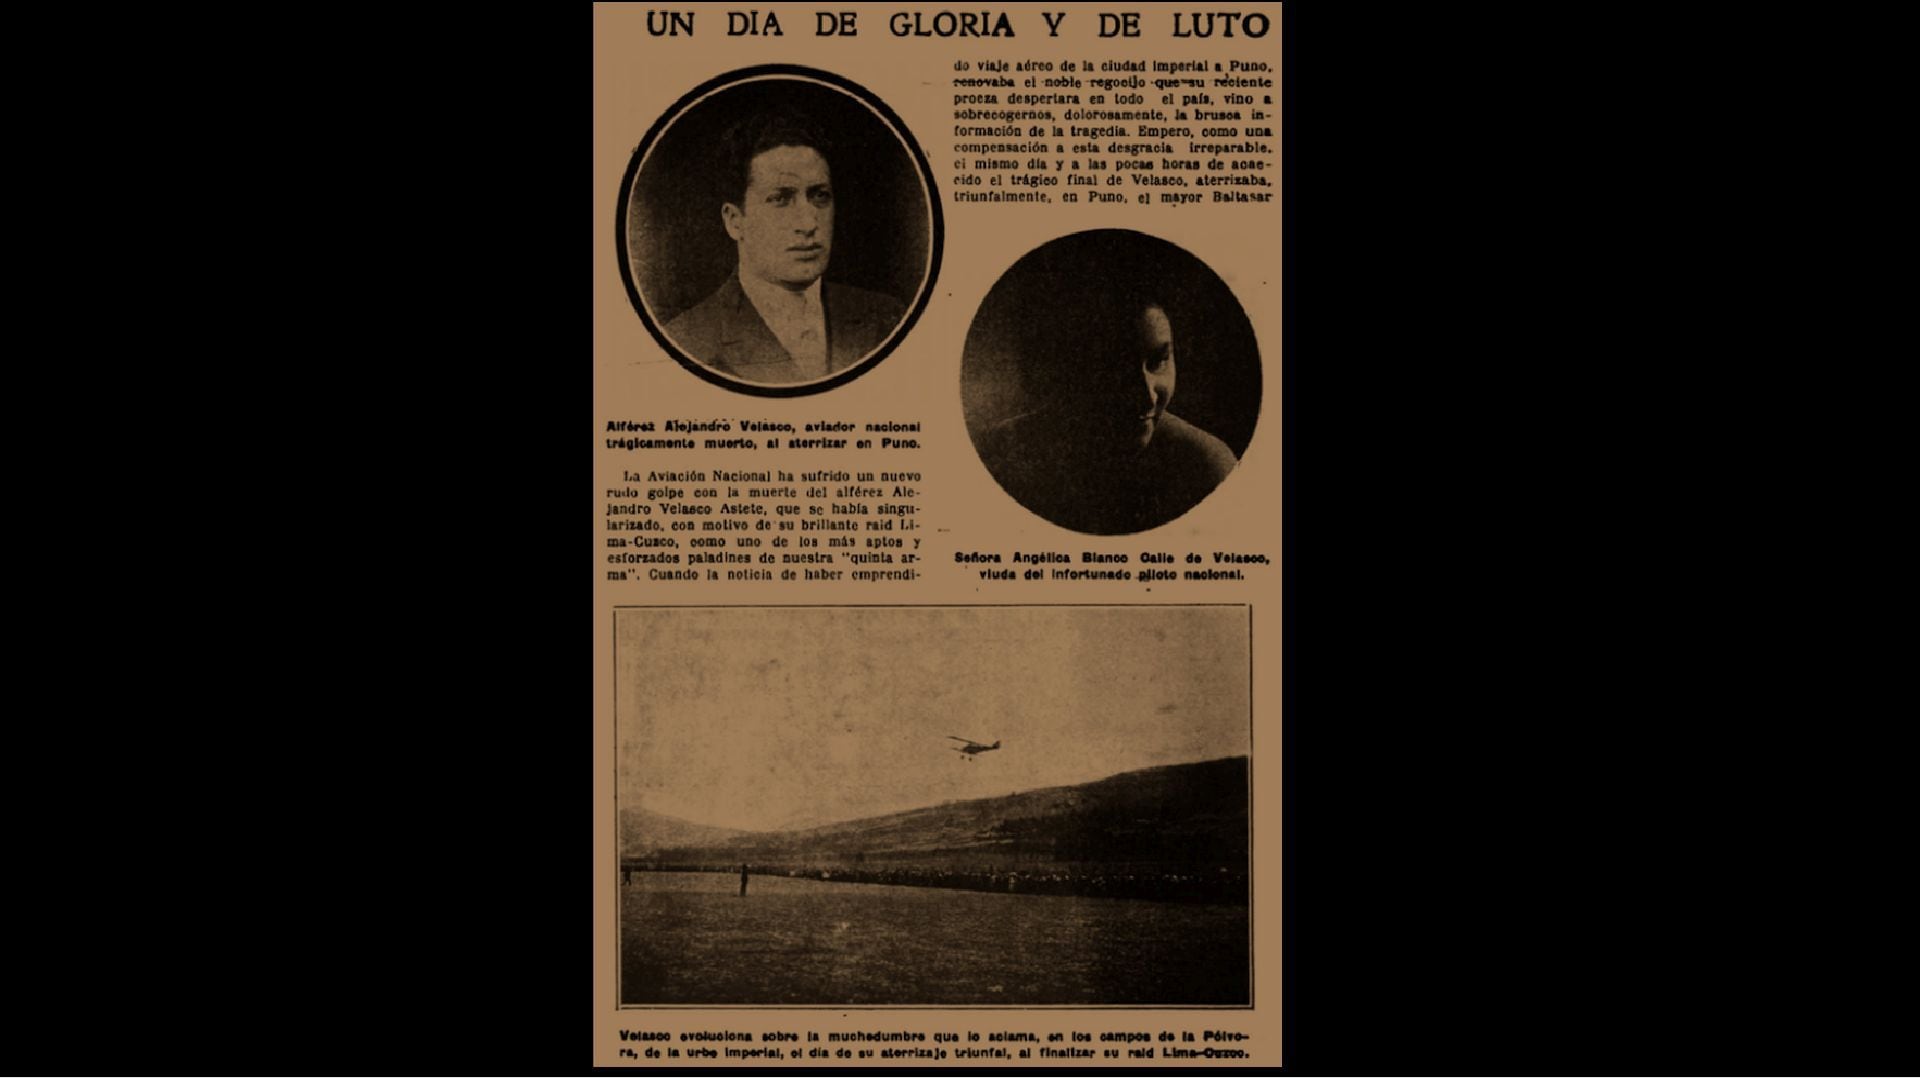 La Cordillera de los Andes fue testigo de la valentía de Alejandro Velasco Astete, el aviador que cruzó fronteras y dejó un legado imborrable. (Historia de Alto Vuelo Cusco)